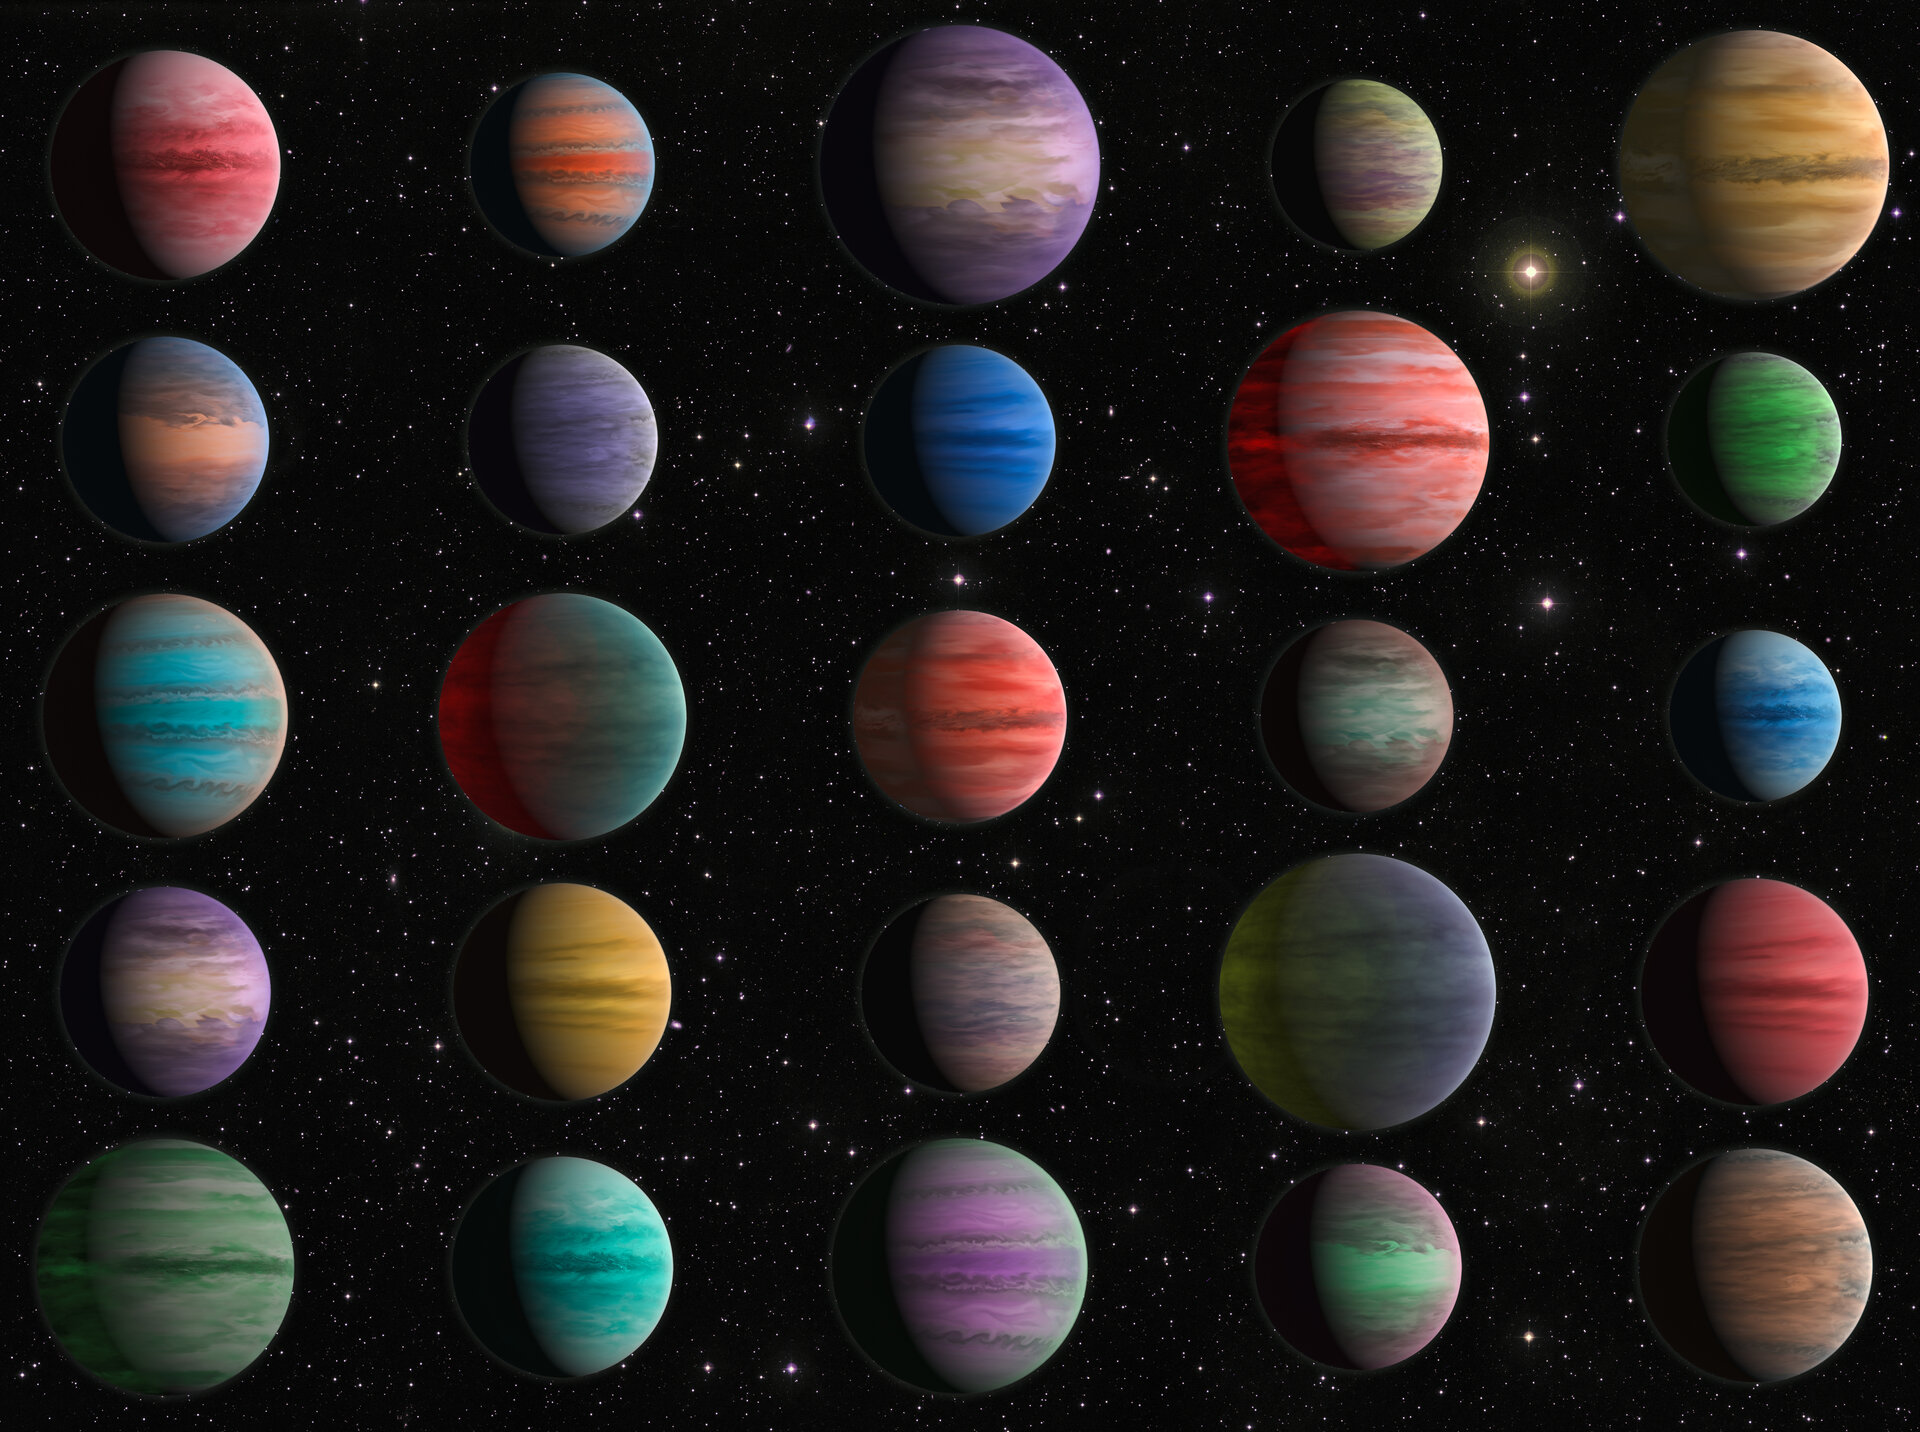 歐洲太空總署公佈了一組太陽系外「熱木星」 （ Hot Jupiters ） 的模擬圖。